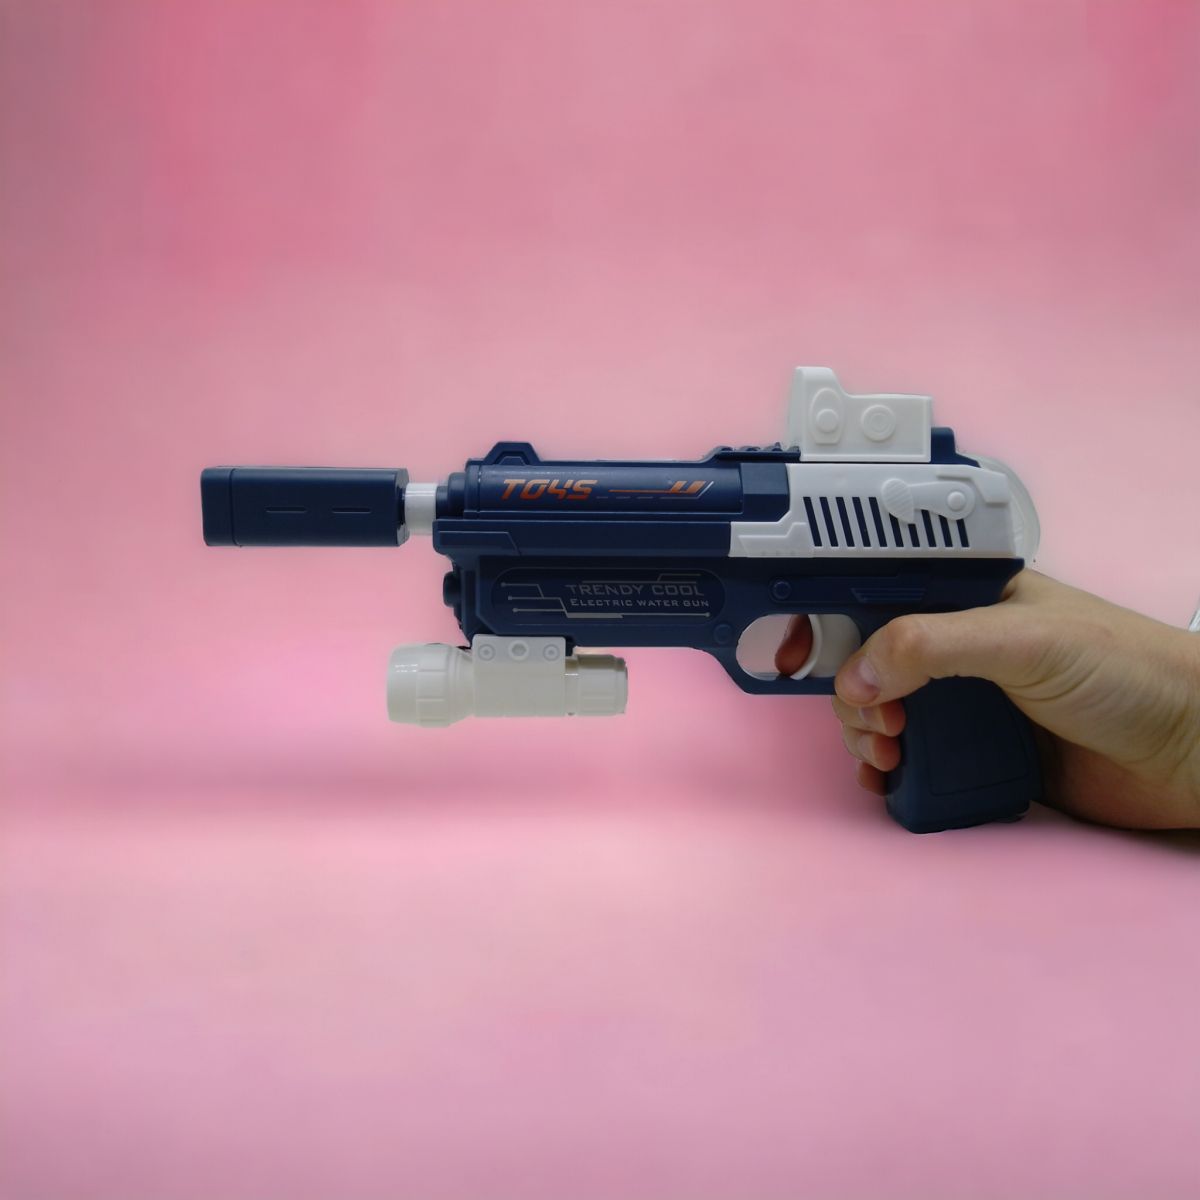 Водный пистолет с баллоном, электрический (розовый)